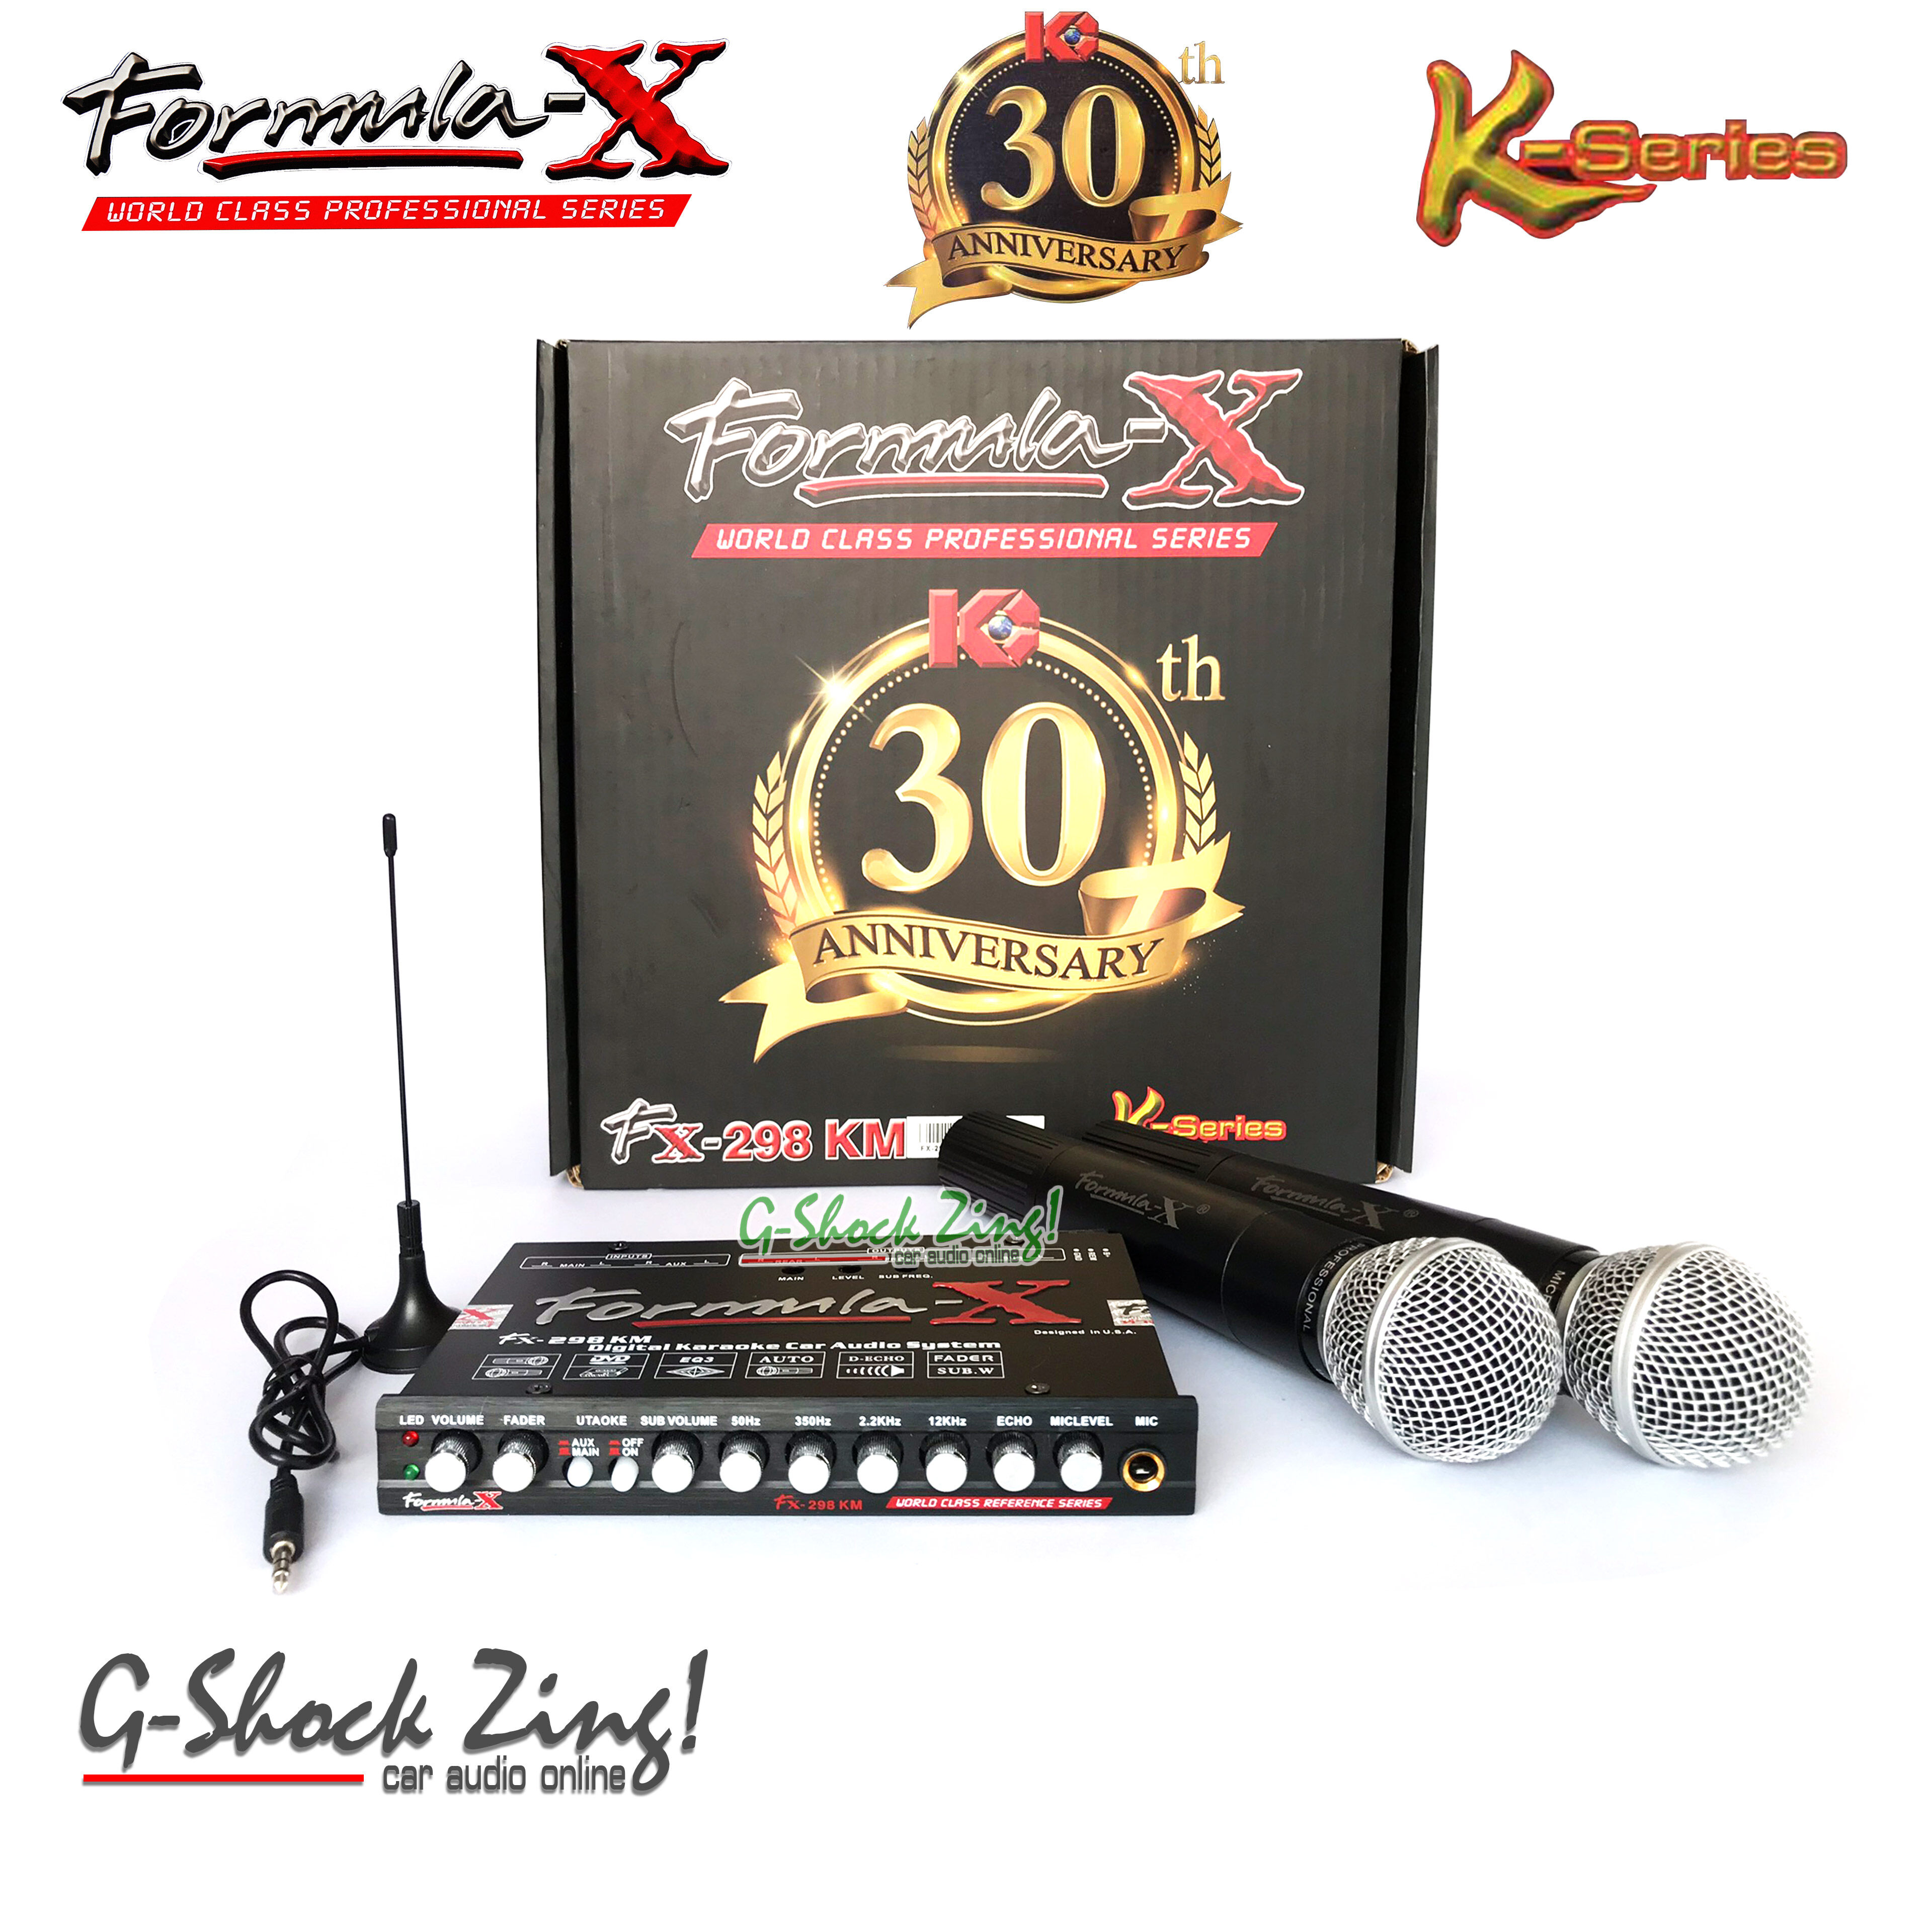 FORMULA-X ปรีไมค์ คุณภาพเสียงดี ร้องคาราโอเกะ+พร้อมชุดไมค์ 2ตัว(ไมค์ไร้สาย) FORMULA-X K-series รุ่น FX-298KM (สินค้าประกันบริษัท 1ปี)